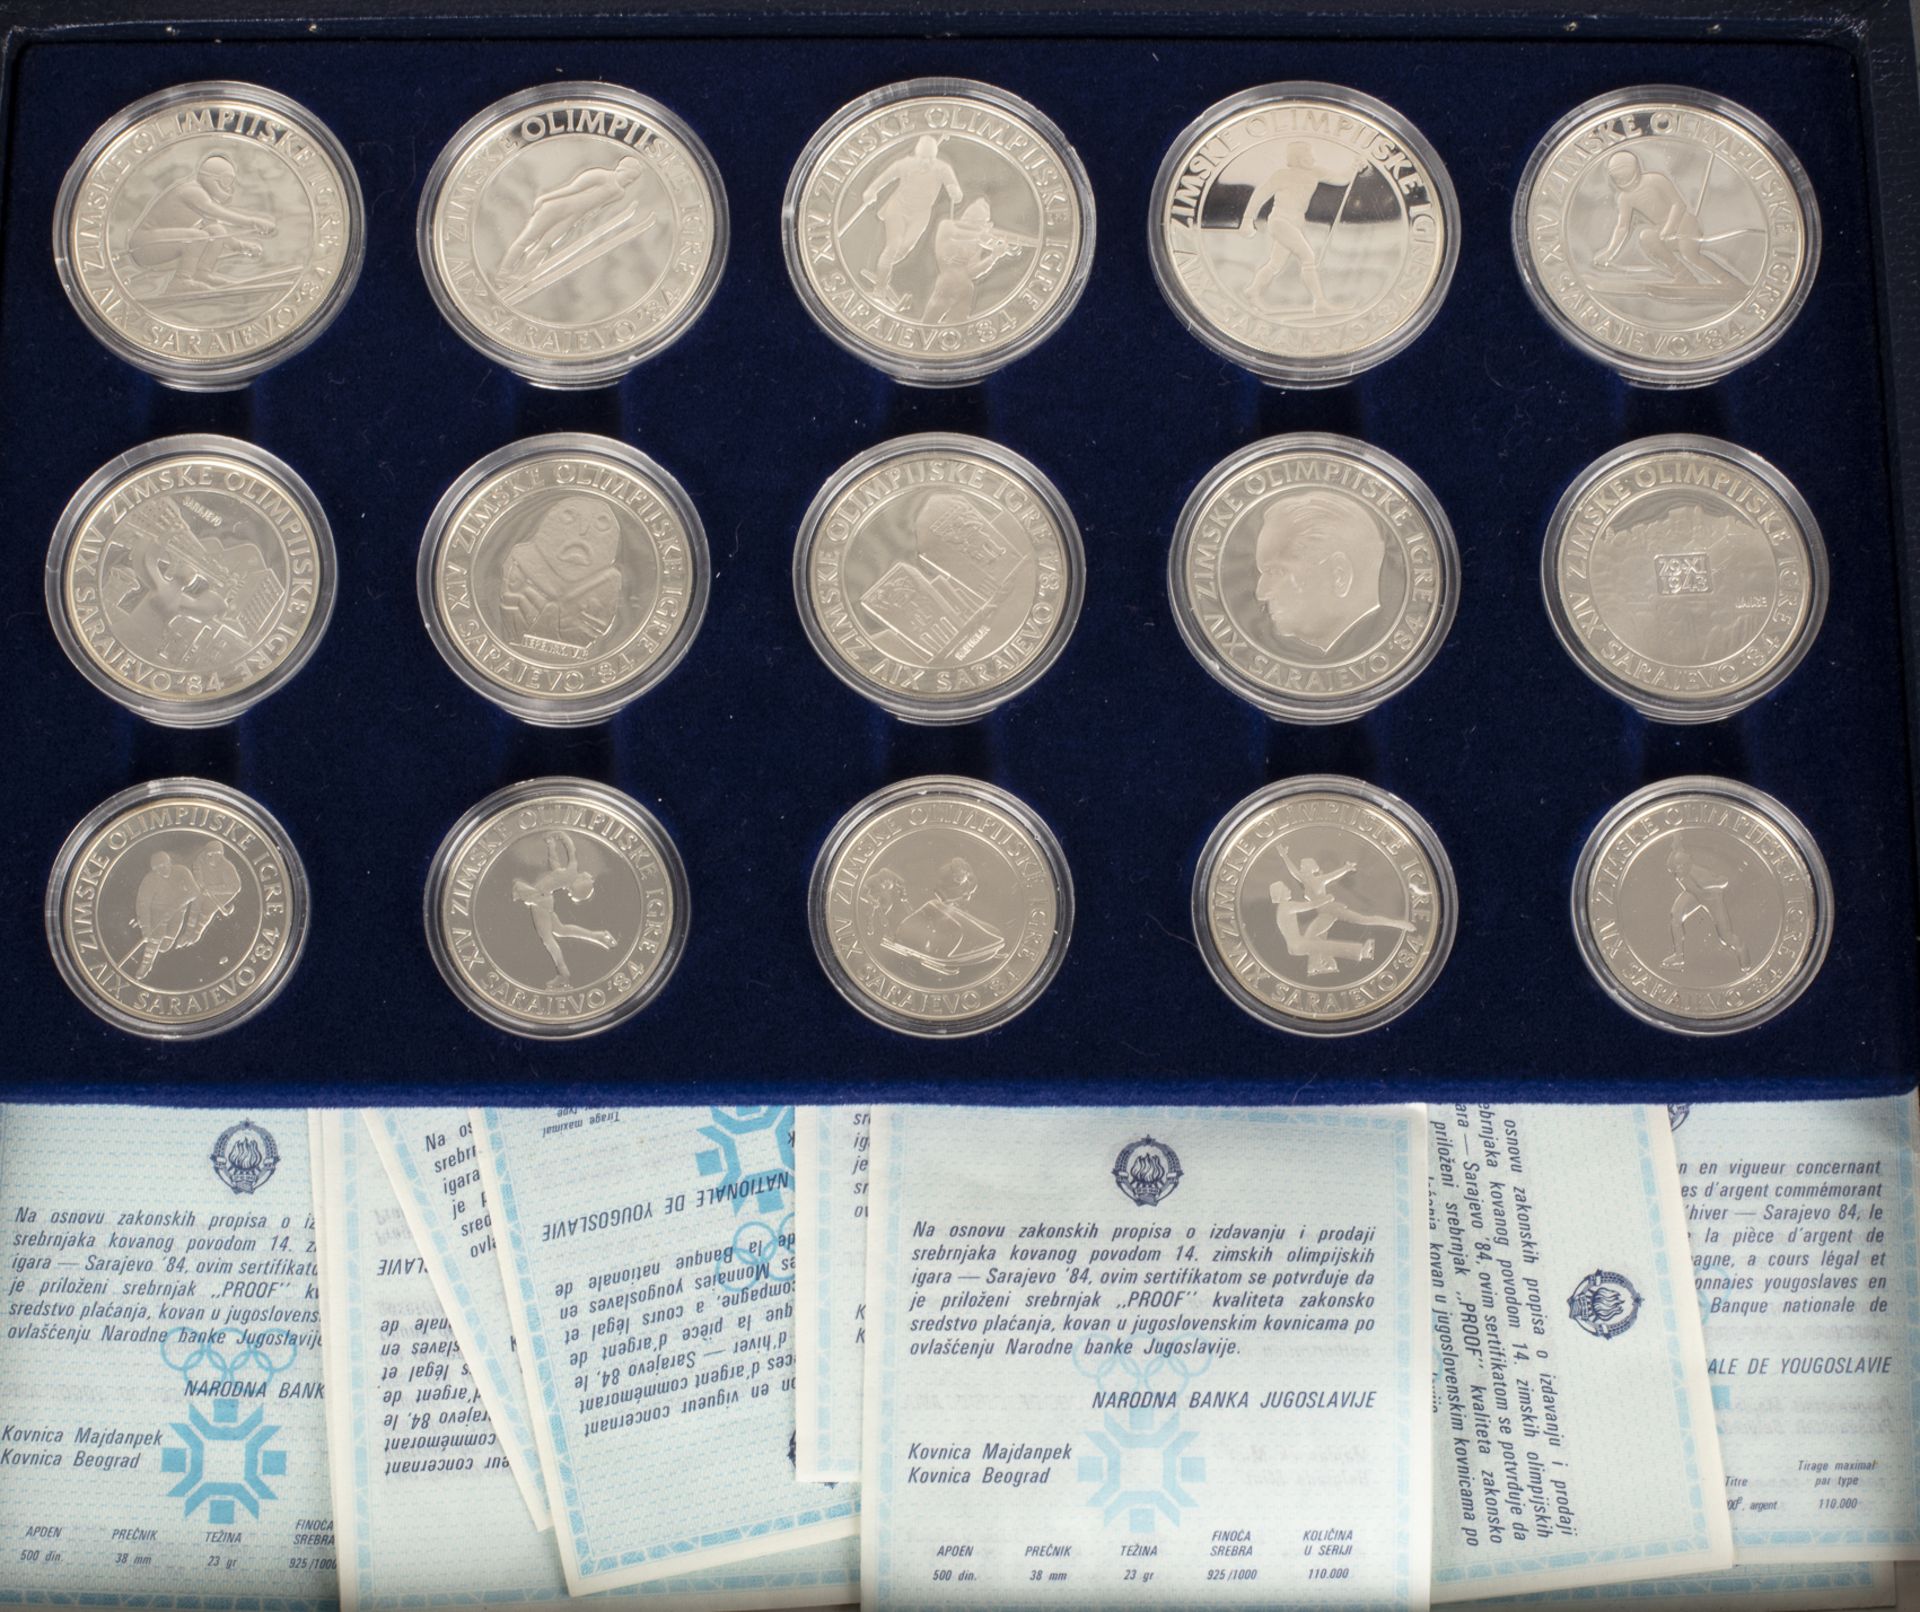 Vollständiger Satz Silber-Gedenkmünzen der Olympischen Spiele 1983/1984 in Los Angeles und Sarajewo - Image 3 of 3